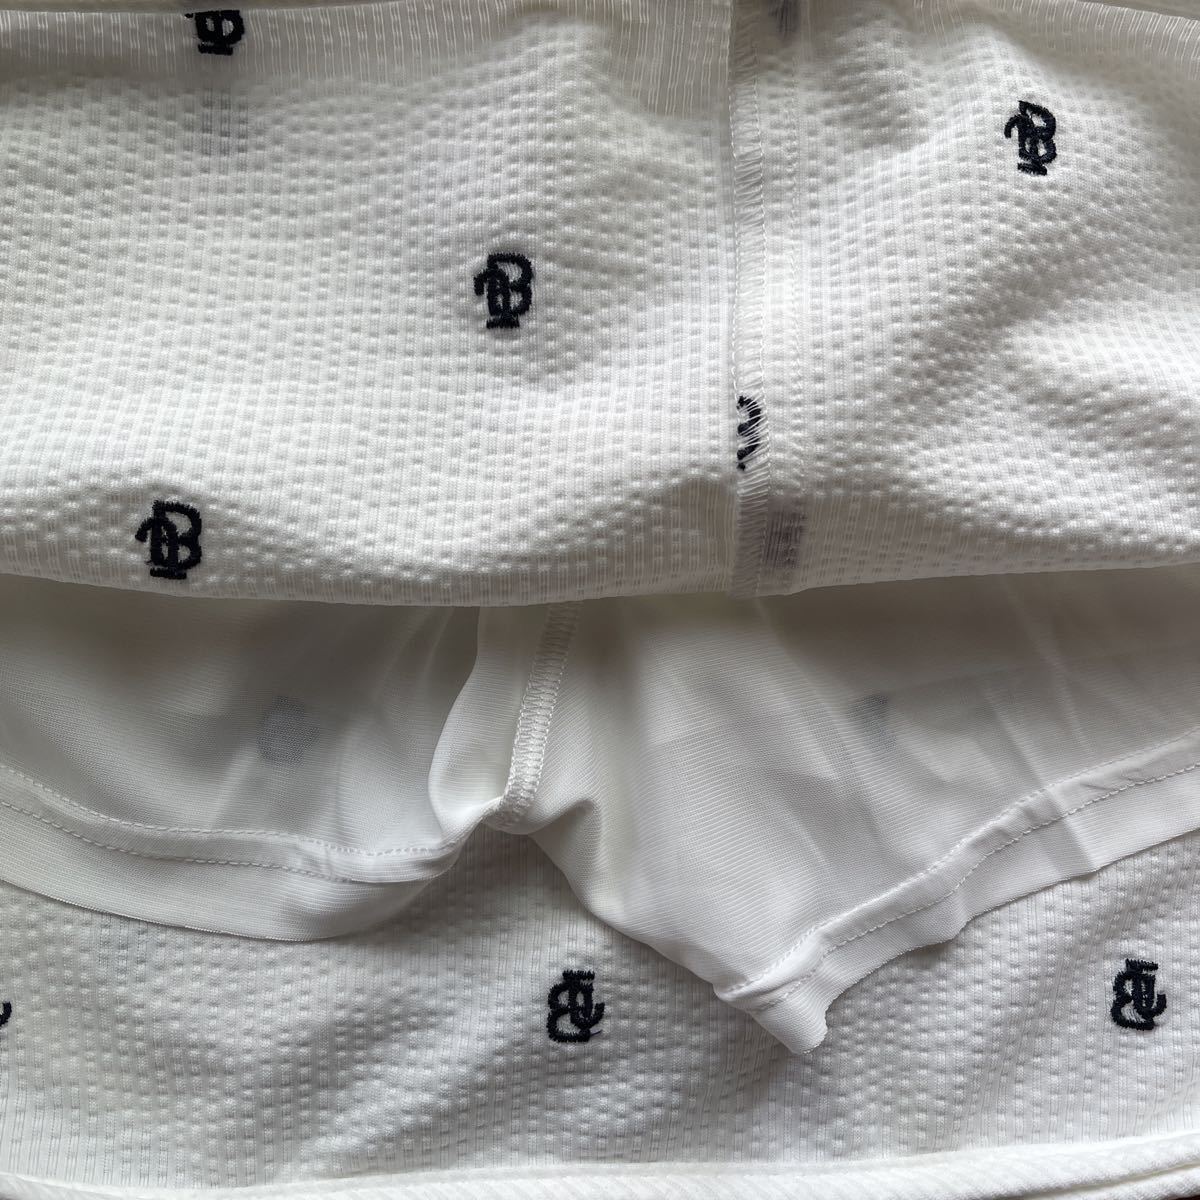  бесплатная доставка Jack ba колено by Pearly Gates JB точка рисунок юбка футбол ткань высокое напряжение STRETCH. вода скорость ... уменьшение ventilation( сильно сниженная цена 2) новый товар 